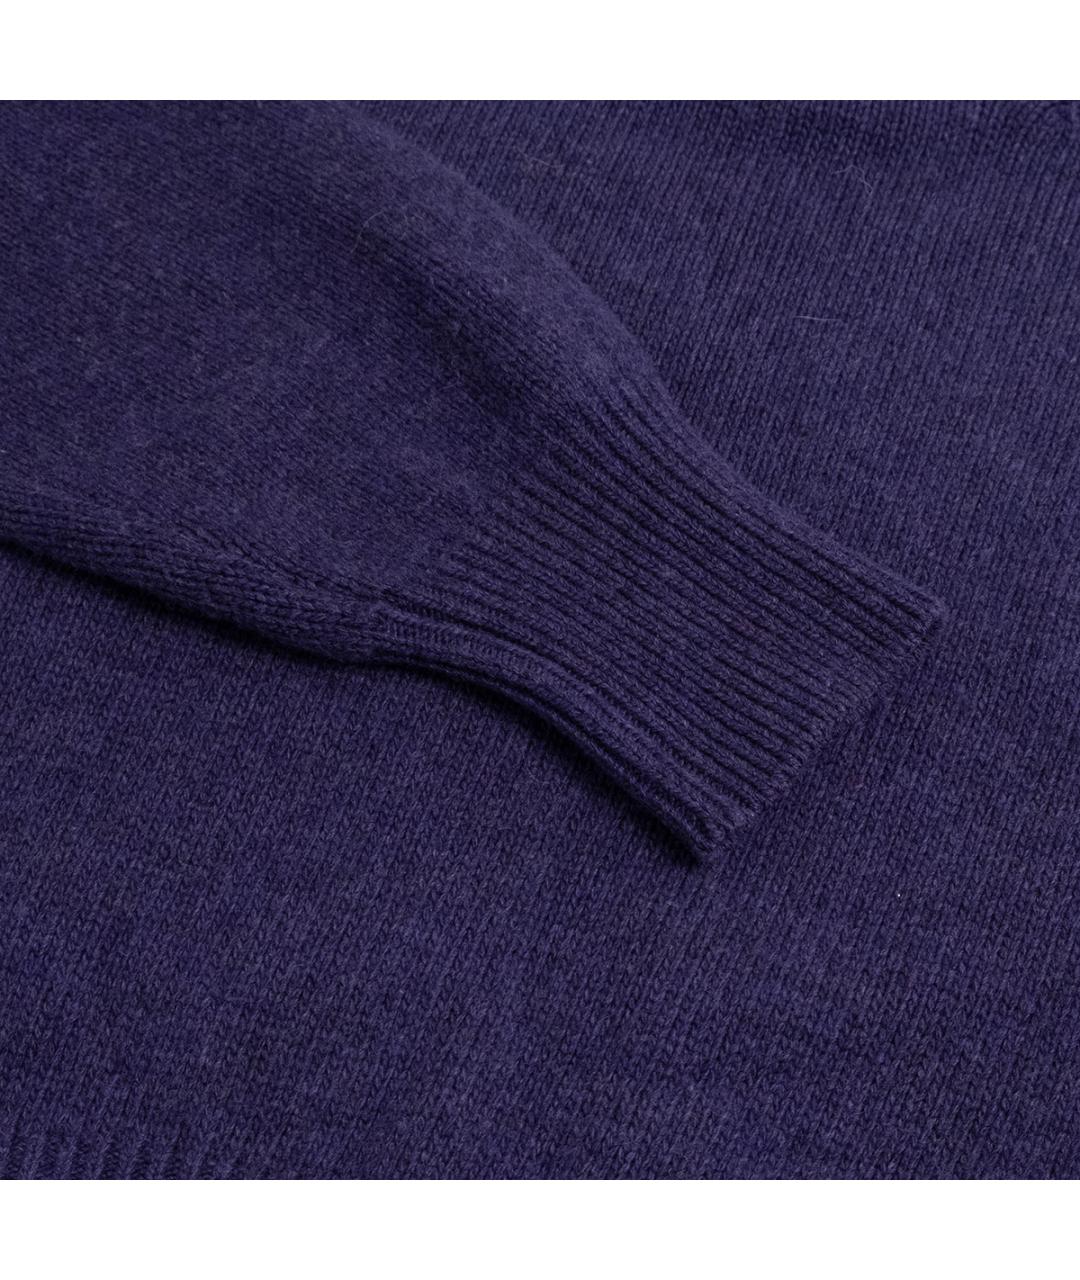 TAK.ORI Фиолетовый шерстяной джемпер / свитер, фото 4